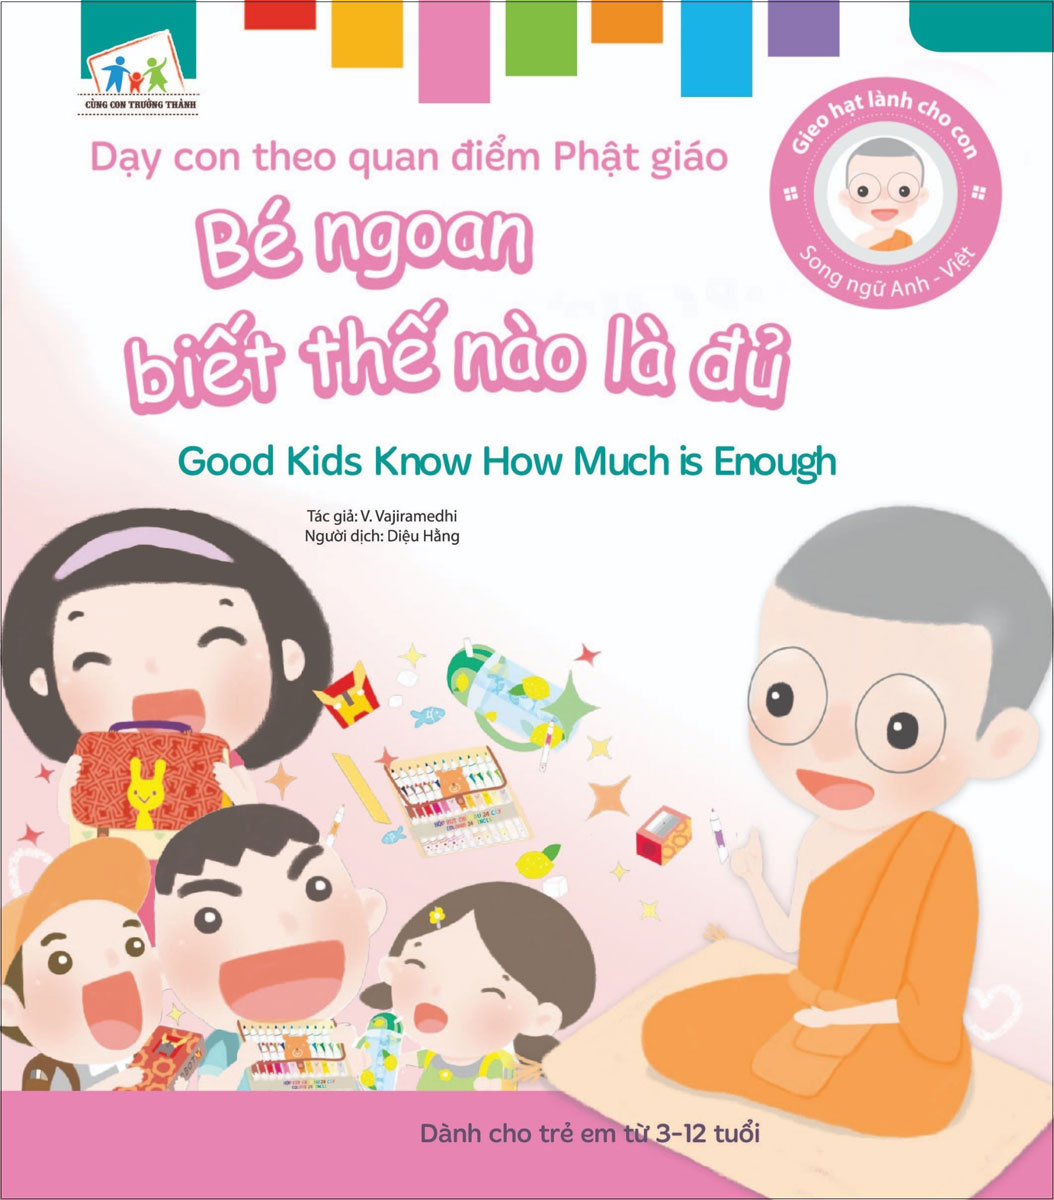 Gieo Hạt Lành Cho Con - Dạy Con Theo Quan Điểm Phật Giáo - Good Kids Know How Much Is Enough - Bé Ngoan Biết Thế Nào Là Đủ